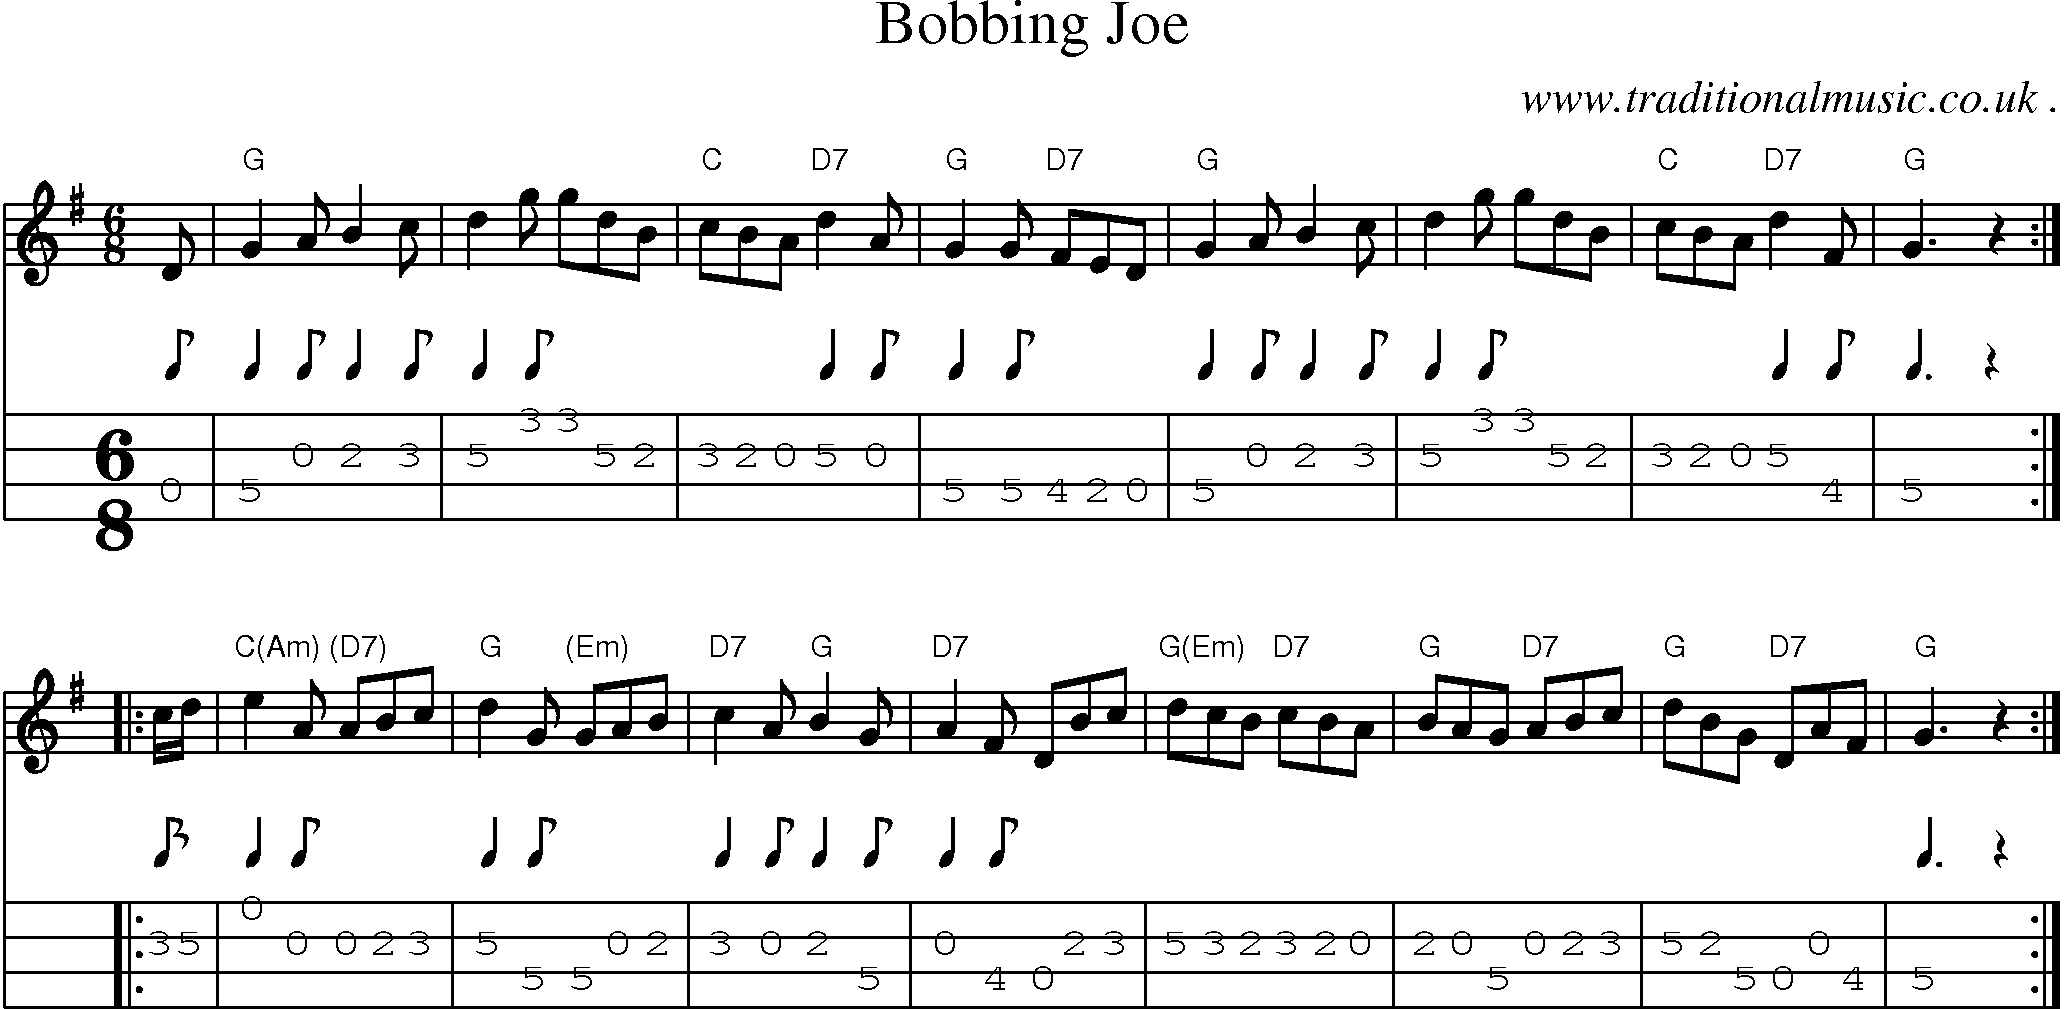 Sheet-music  score, Chords and Mandolin Tabs for Bobbing Joe